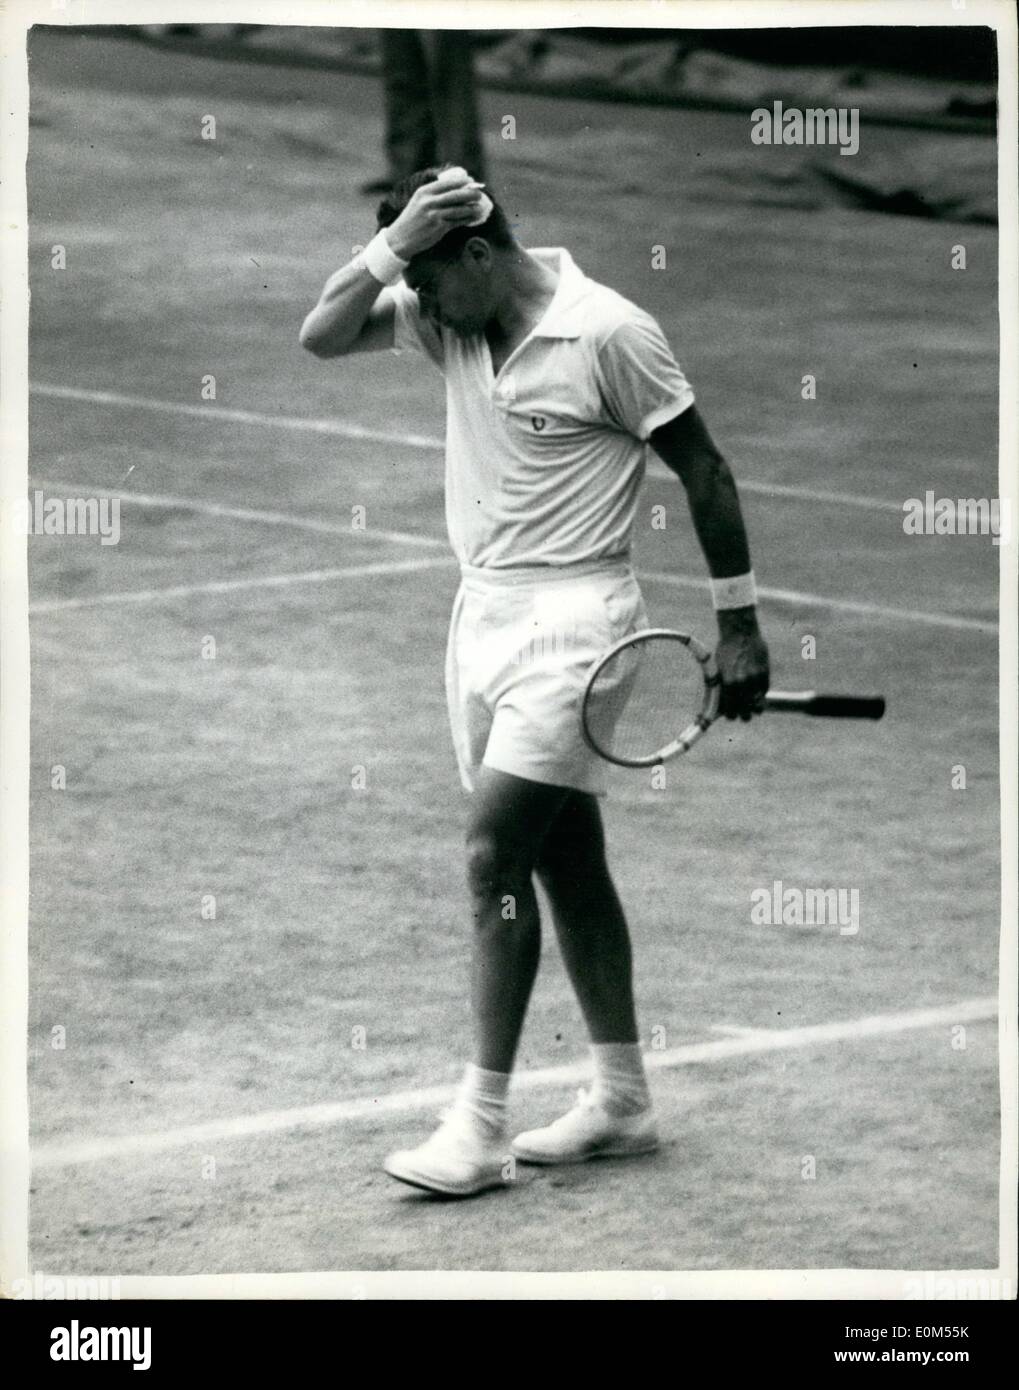 Lug. 07, 1953 - Uomini singolo semi- finali di Wimbledon. Drobny Mops suo brow. Dane vince.: mostra fotografica di J. Drobnyh d'Egitto mops suo brow- tra i set- durante i suoi uomini singoli Wimbledon questo pomeriggio. Foto Stock